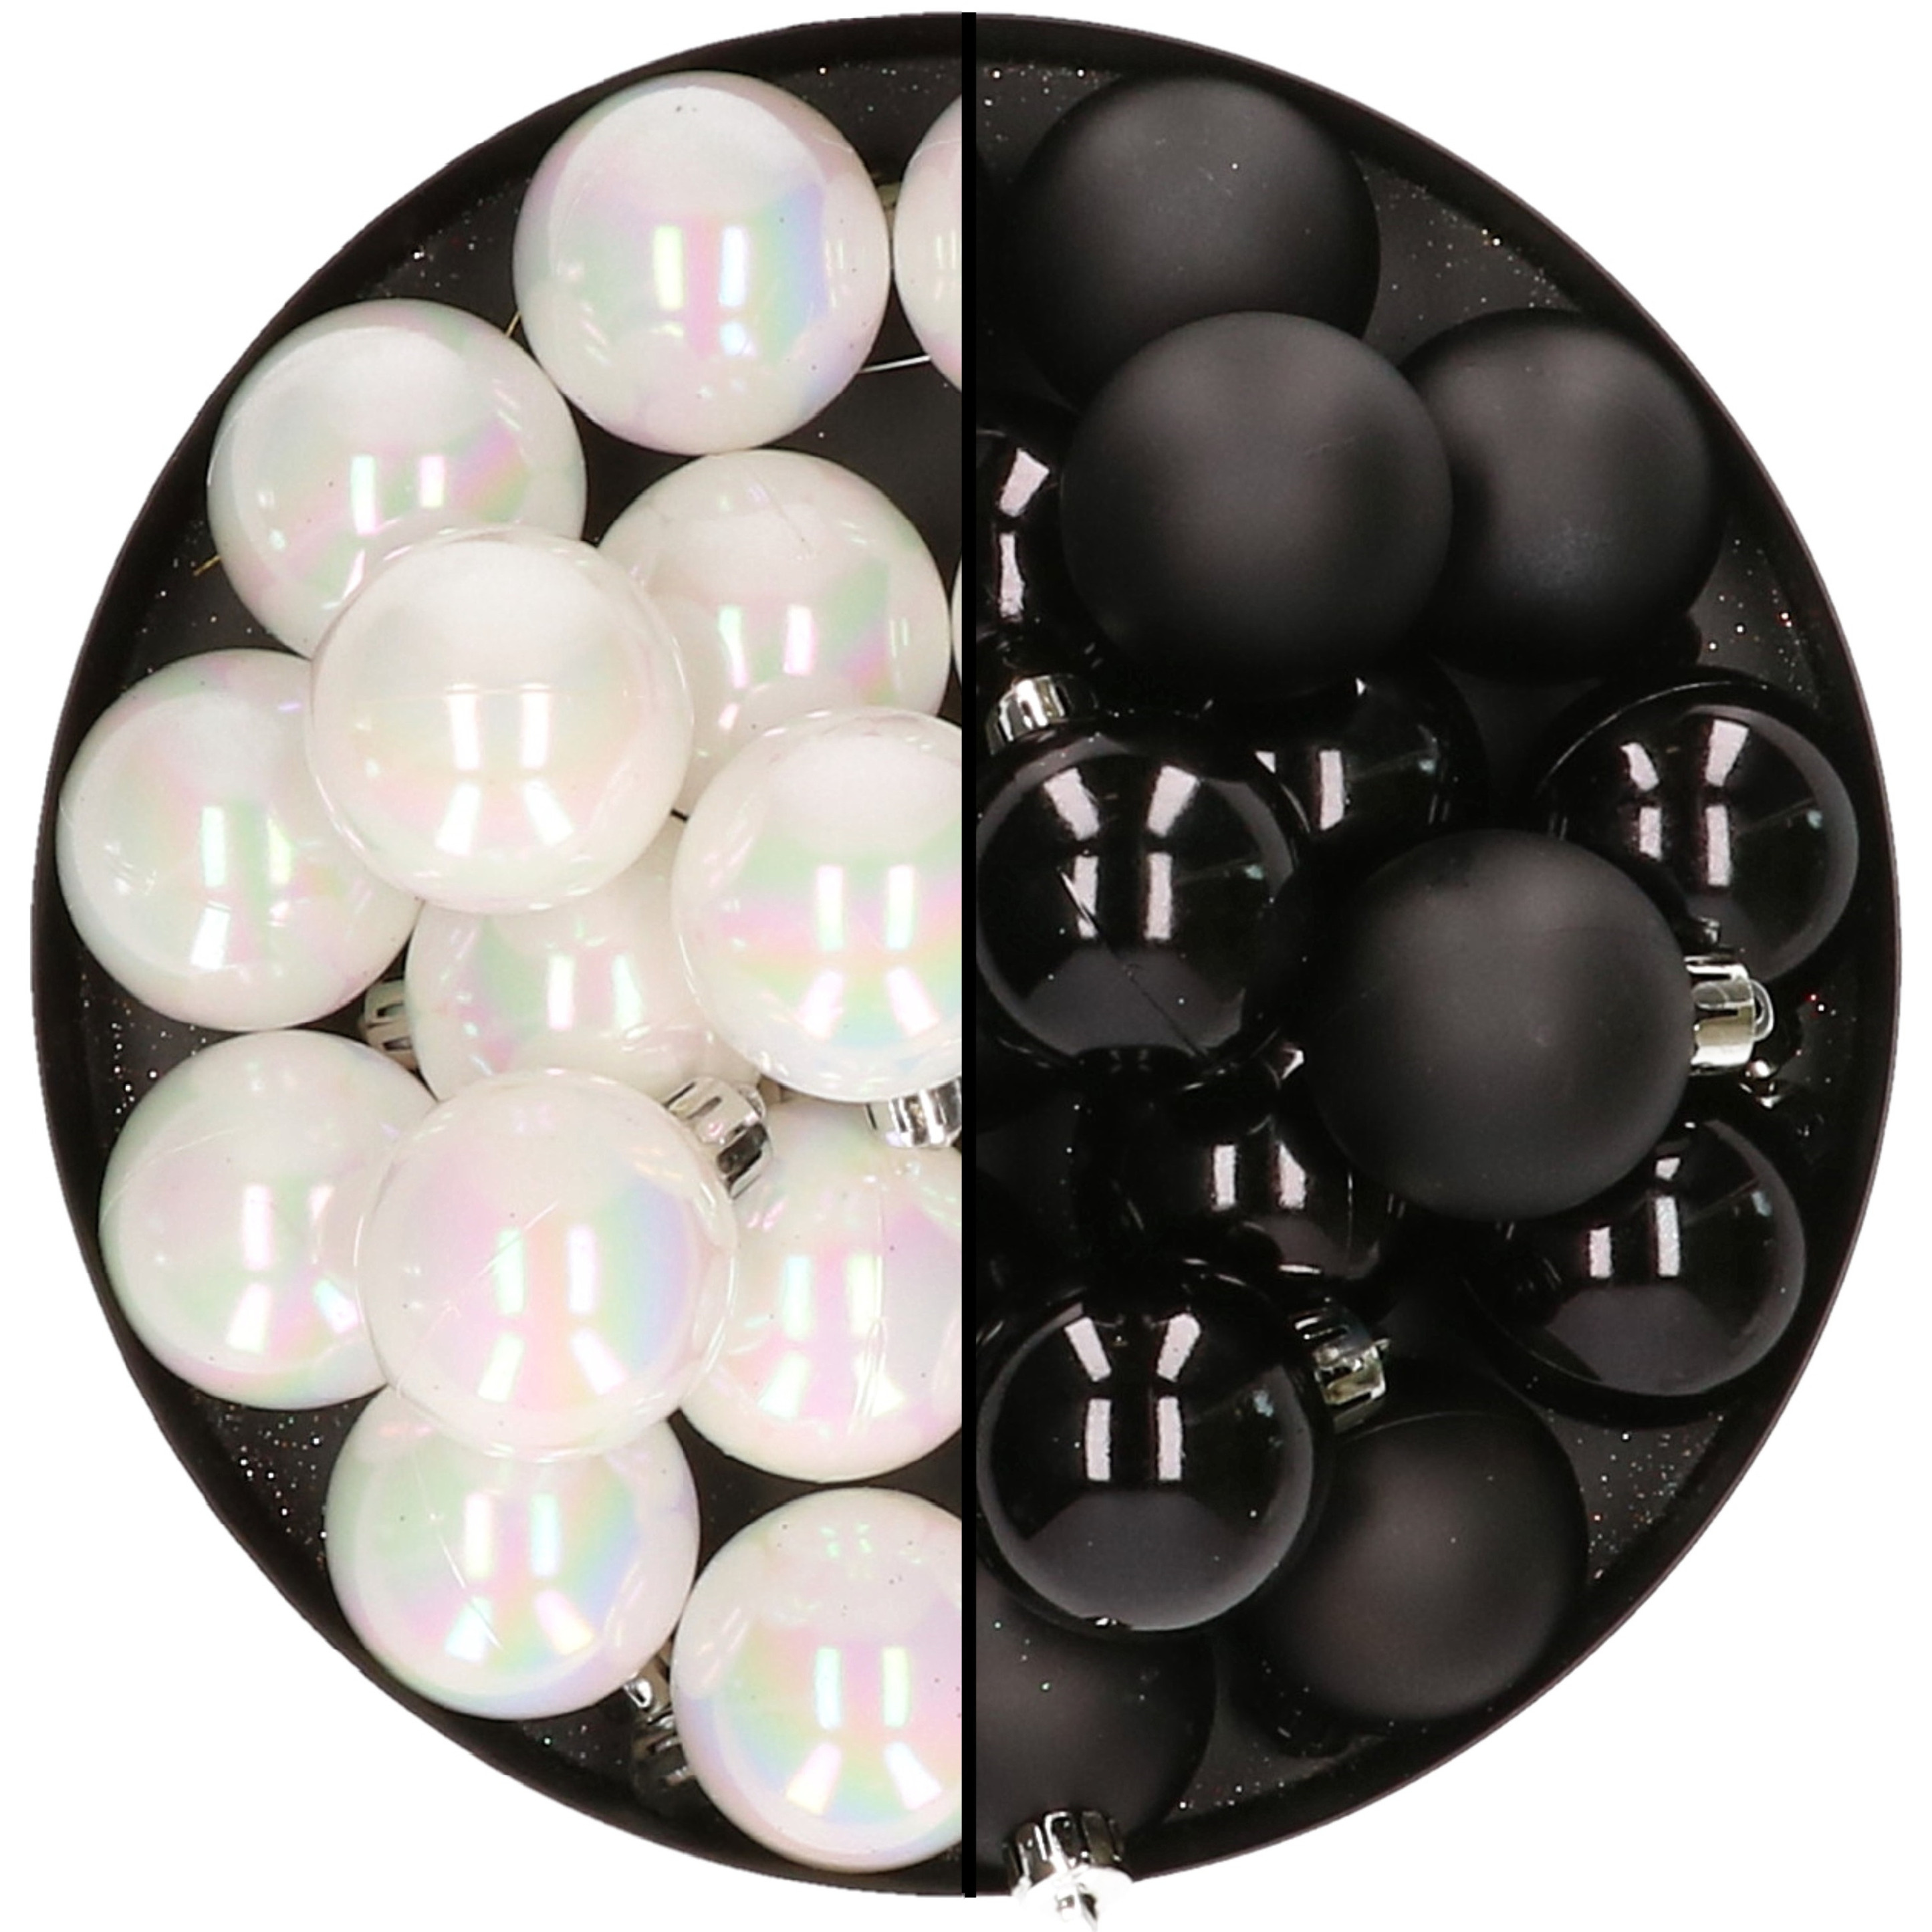 32x stuks kunststof kerstballen mix van parelmoer wit en zwart 4 cm